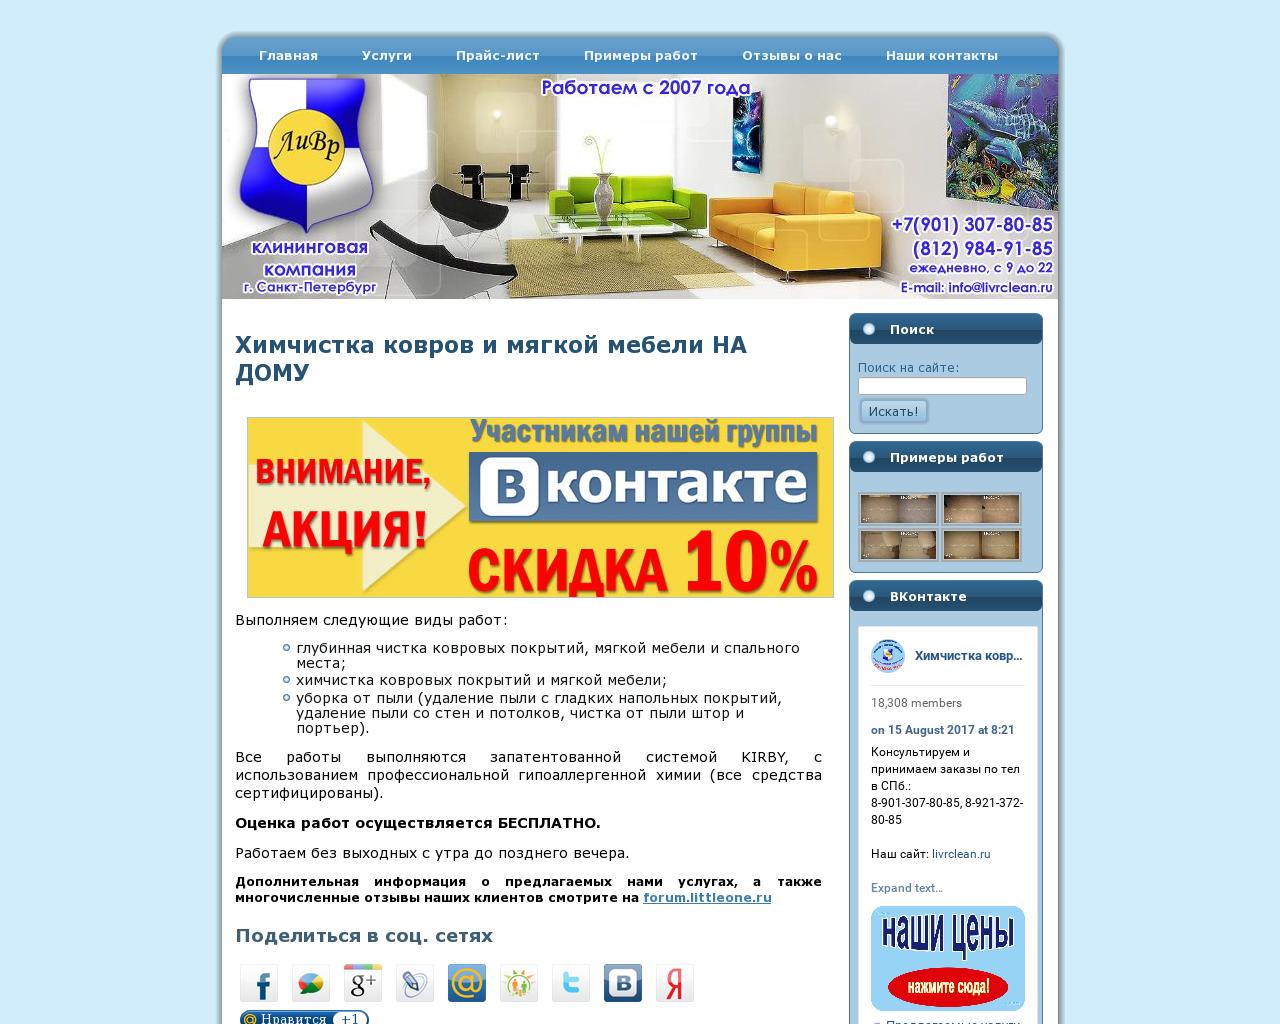 Изображение сайта livrclean.ru в разрешении 1280x1024